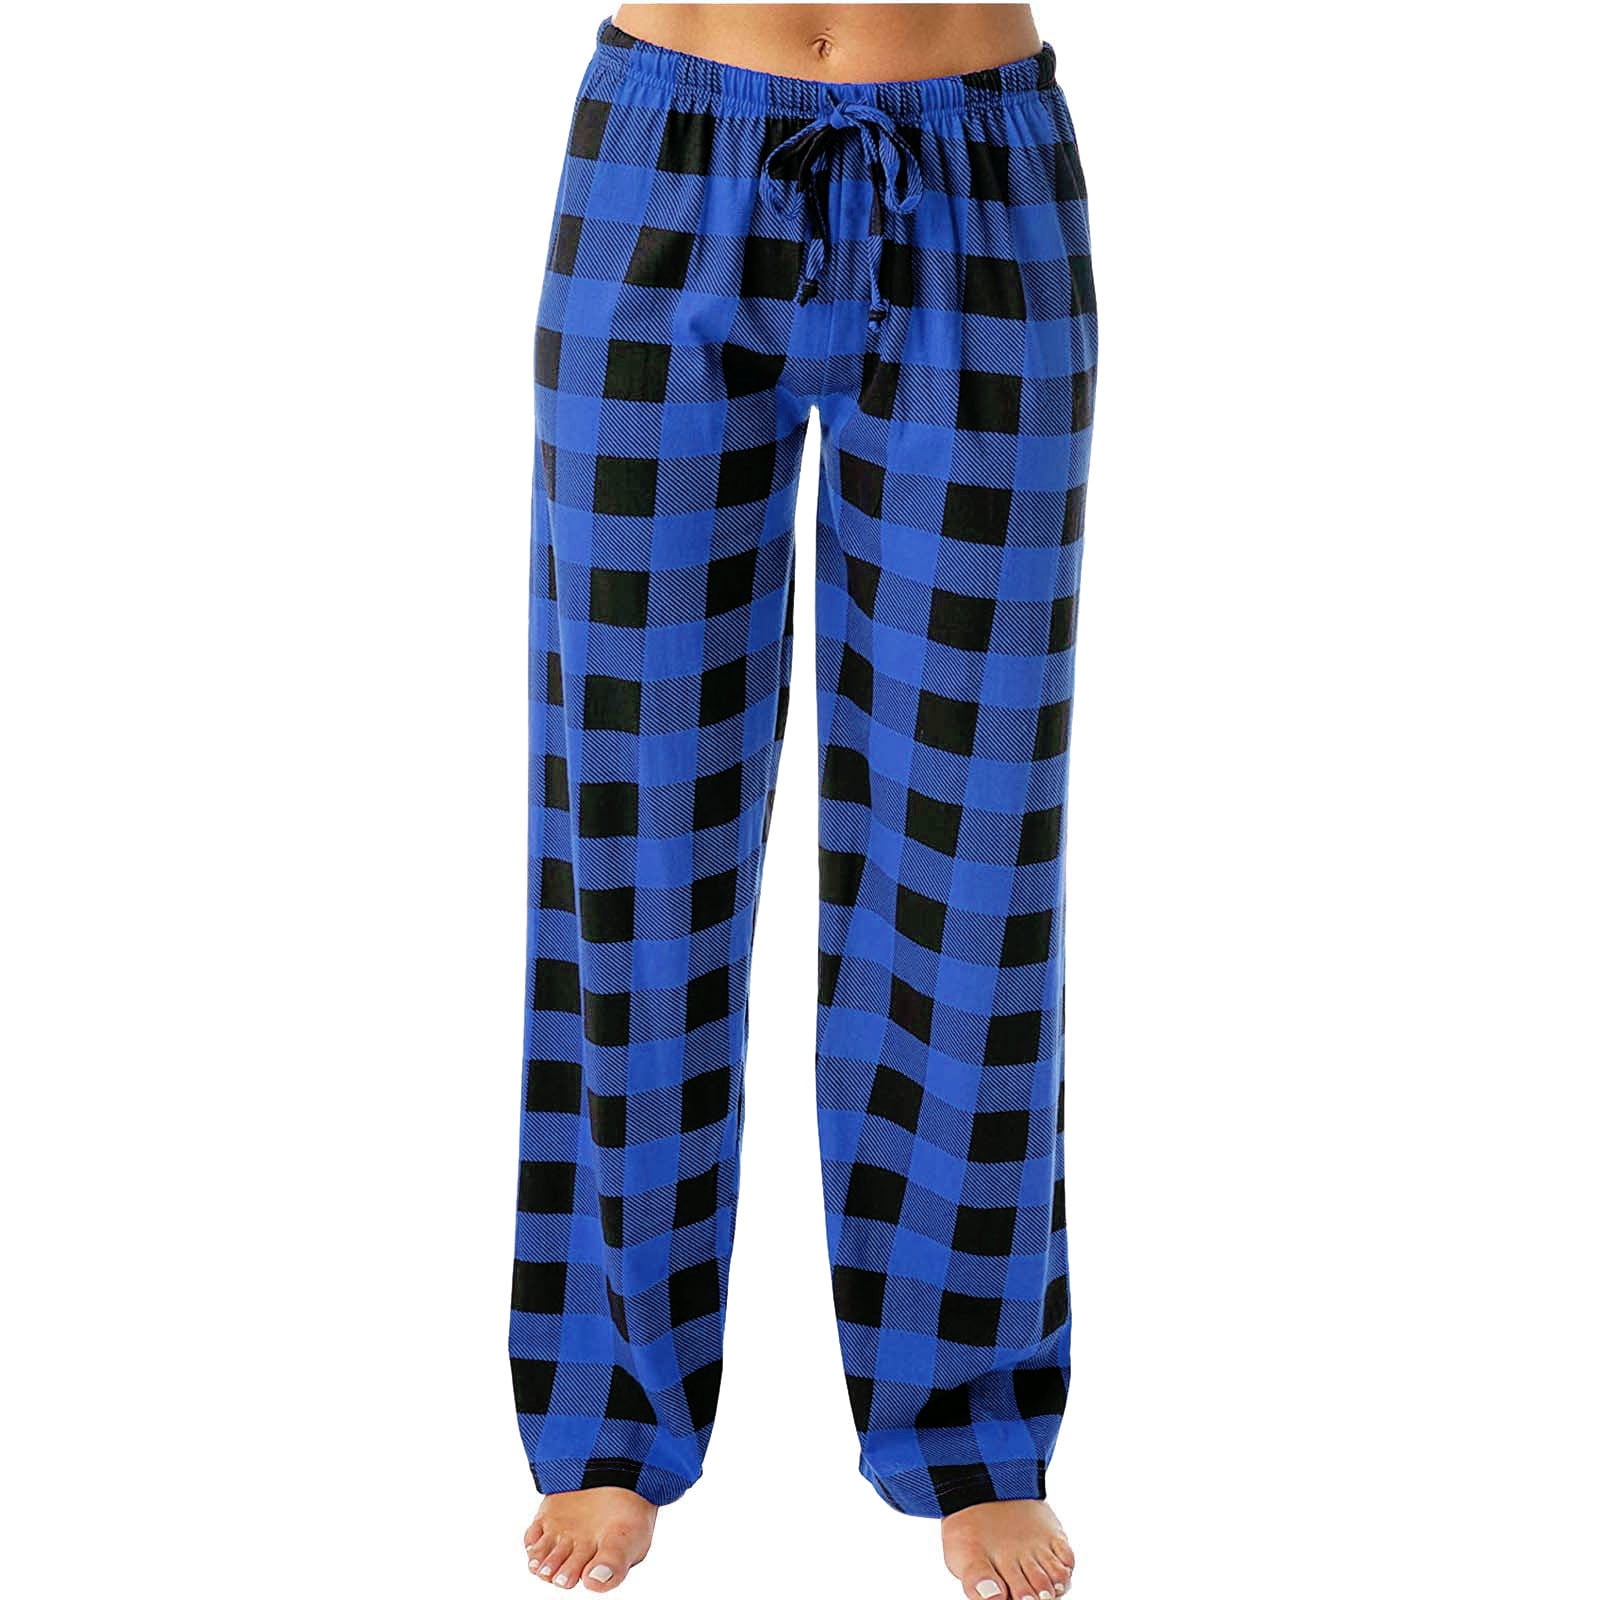 BLVB Womens Plaid Pajama Pants Comfy Loose Fit Lounge Sleep Bottom Wide ...